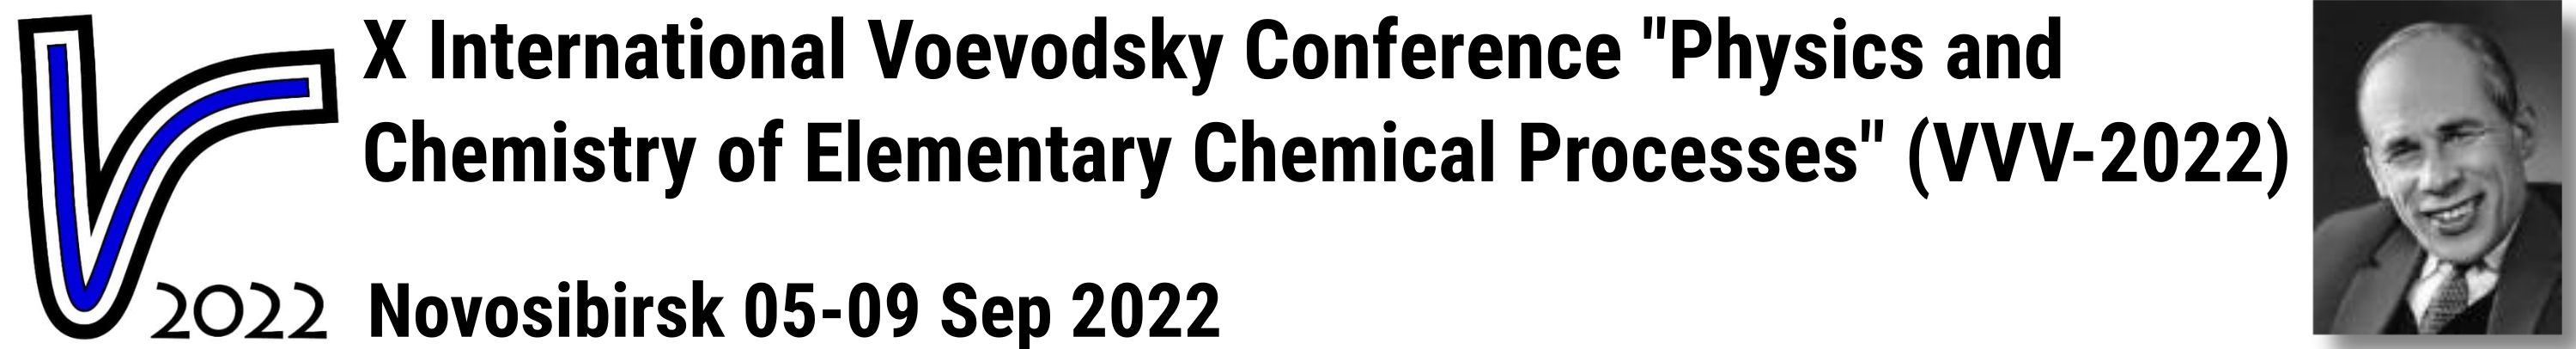 logo vvv2022